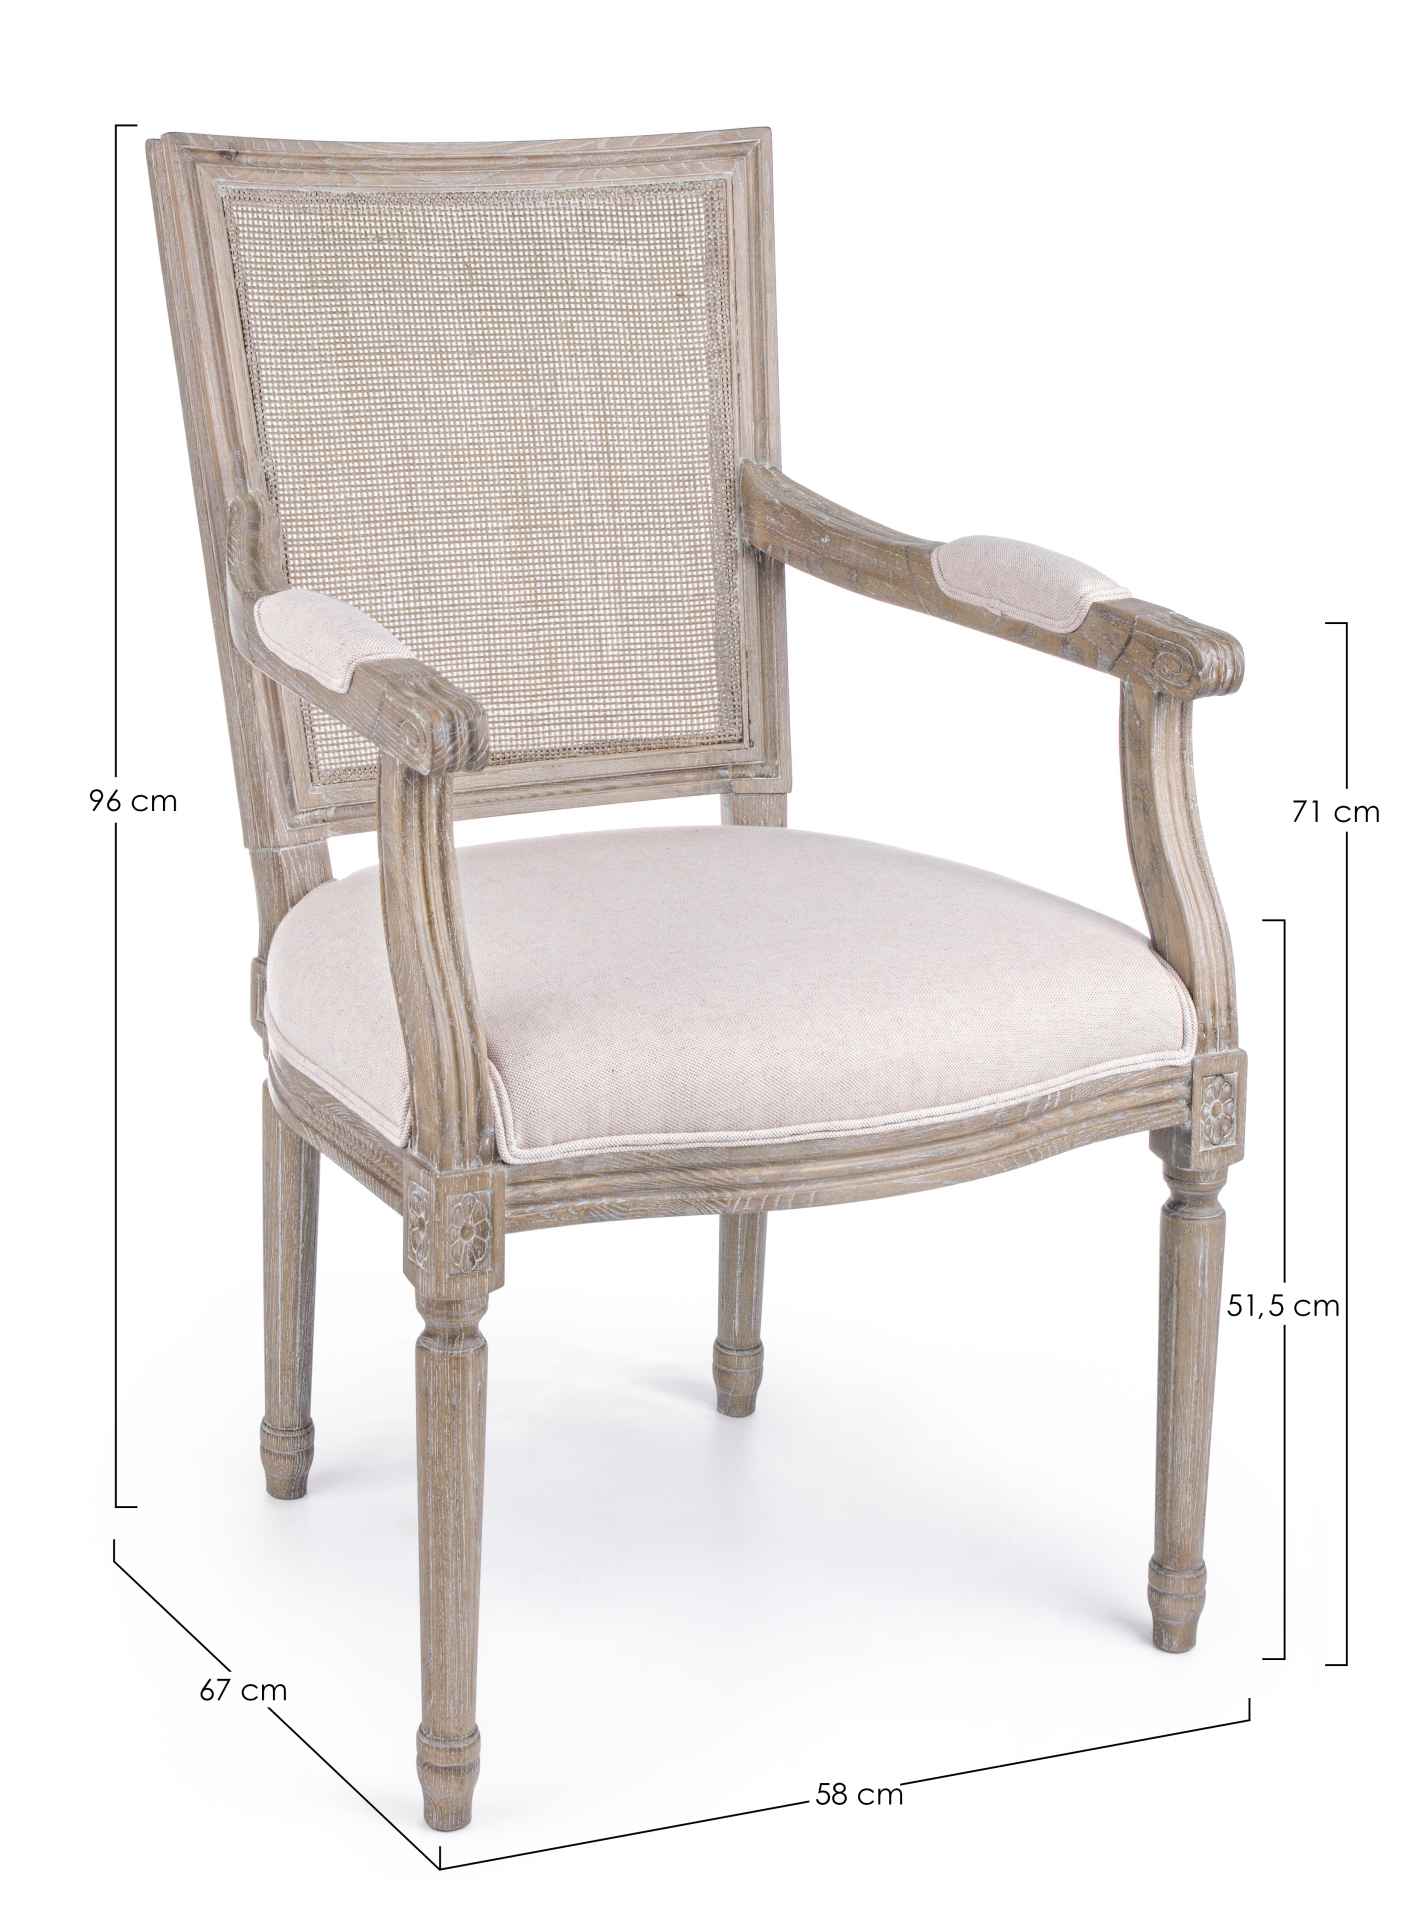 Der Stuhl Liliane überzeugt mit seinem klassischen Design. Gefertigt wurde der Stuhl aus Eschenholz, welches natürlich gehalten wurde. Die Sitzfläche ist aus Stoffbezug, welcher aus einem Mix aus Leinen und Baumwolle besteht. Die Rückenfläche besteht aus 